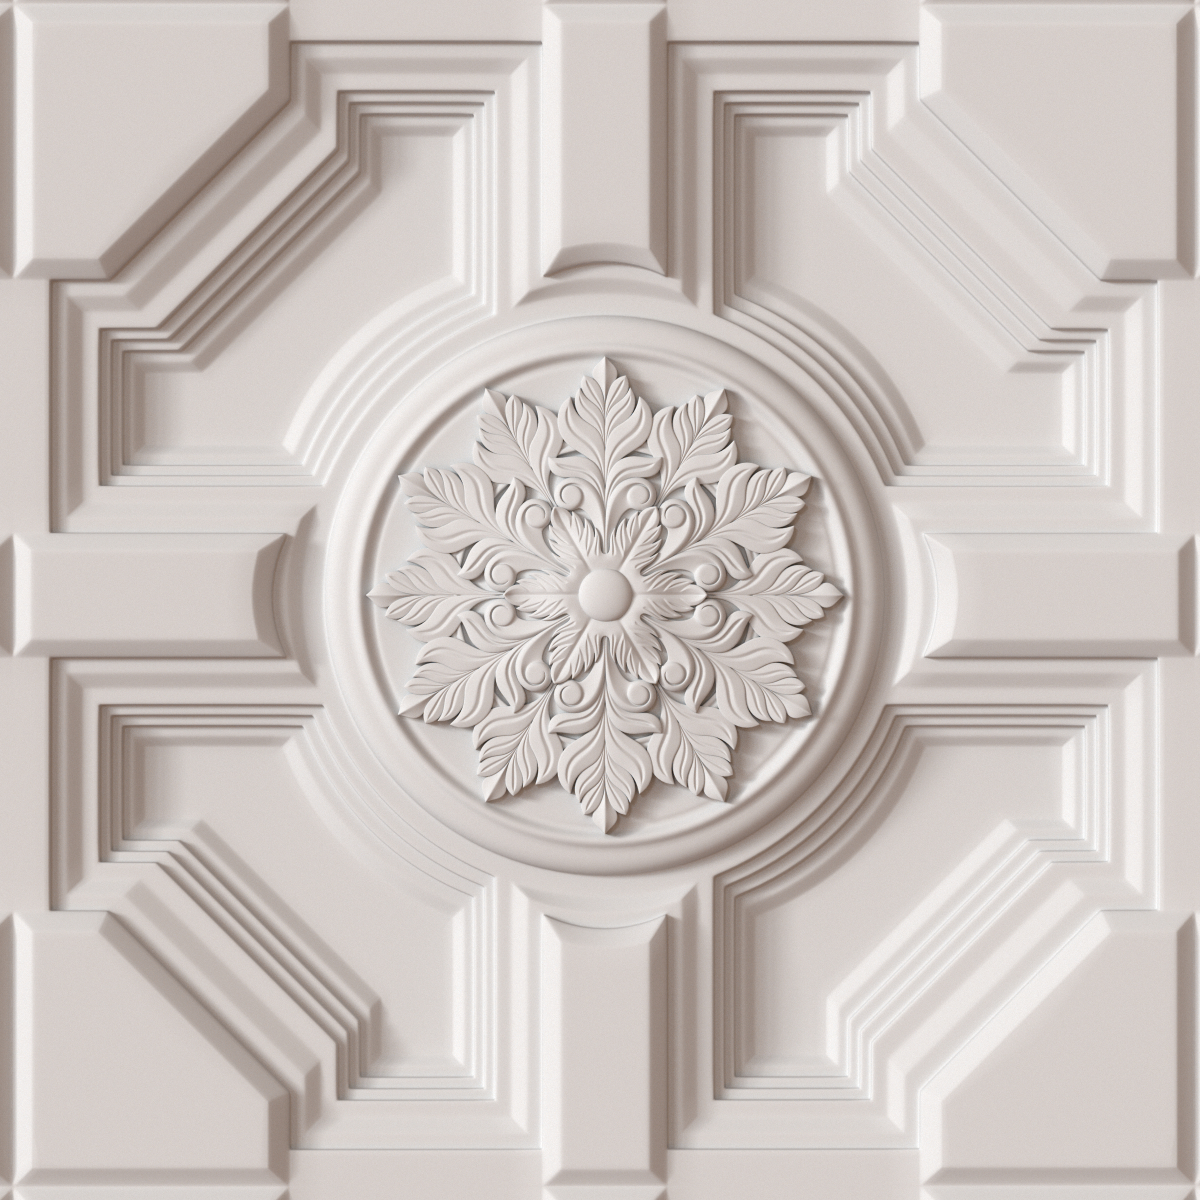 3d Decorative Ceiling Tile Model